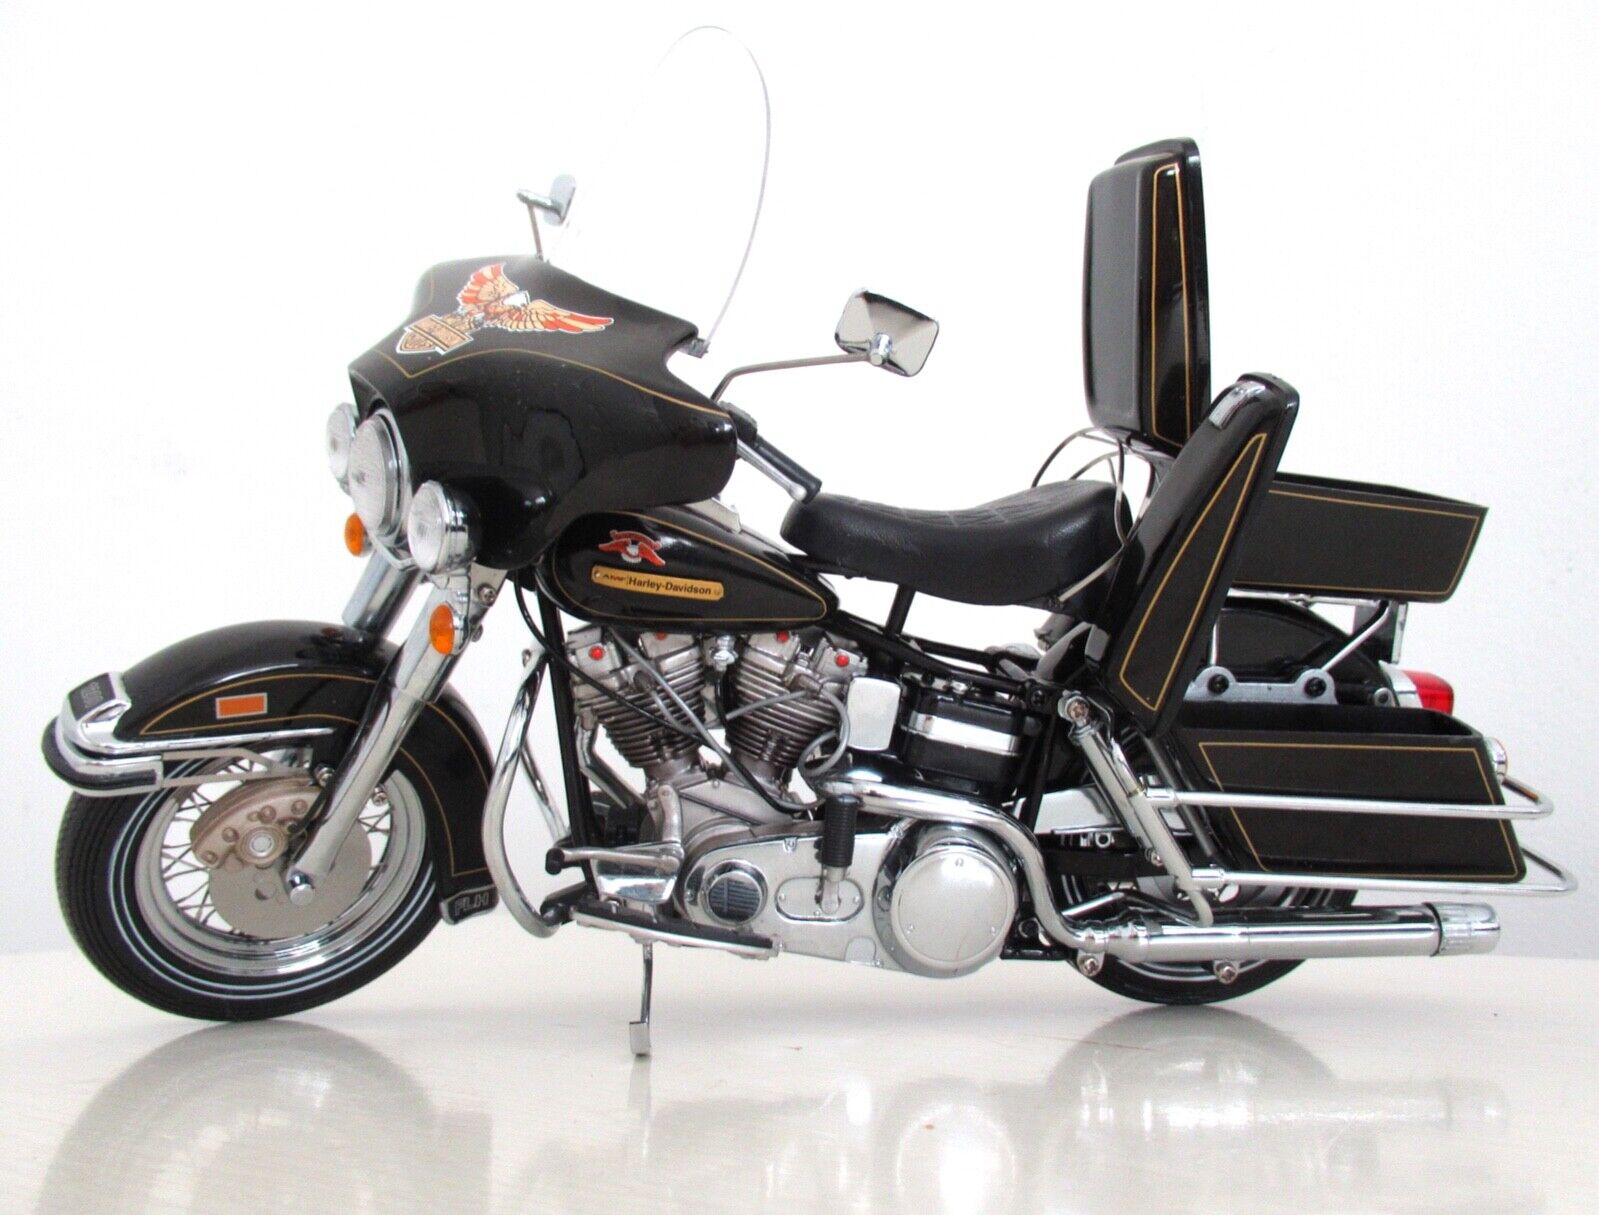 Franklin Mint Harley Davidson 1976 Electra Glide Motorcycle 1:10 Model Display